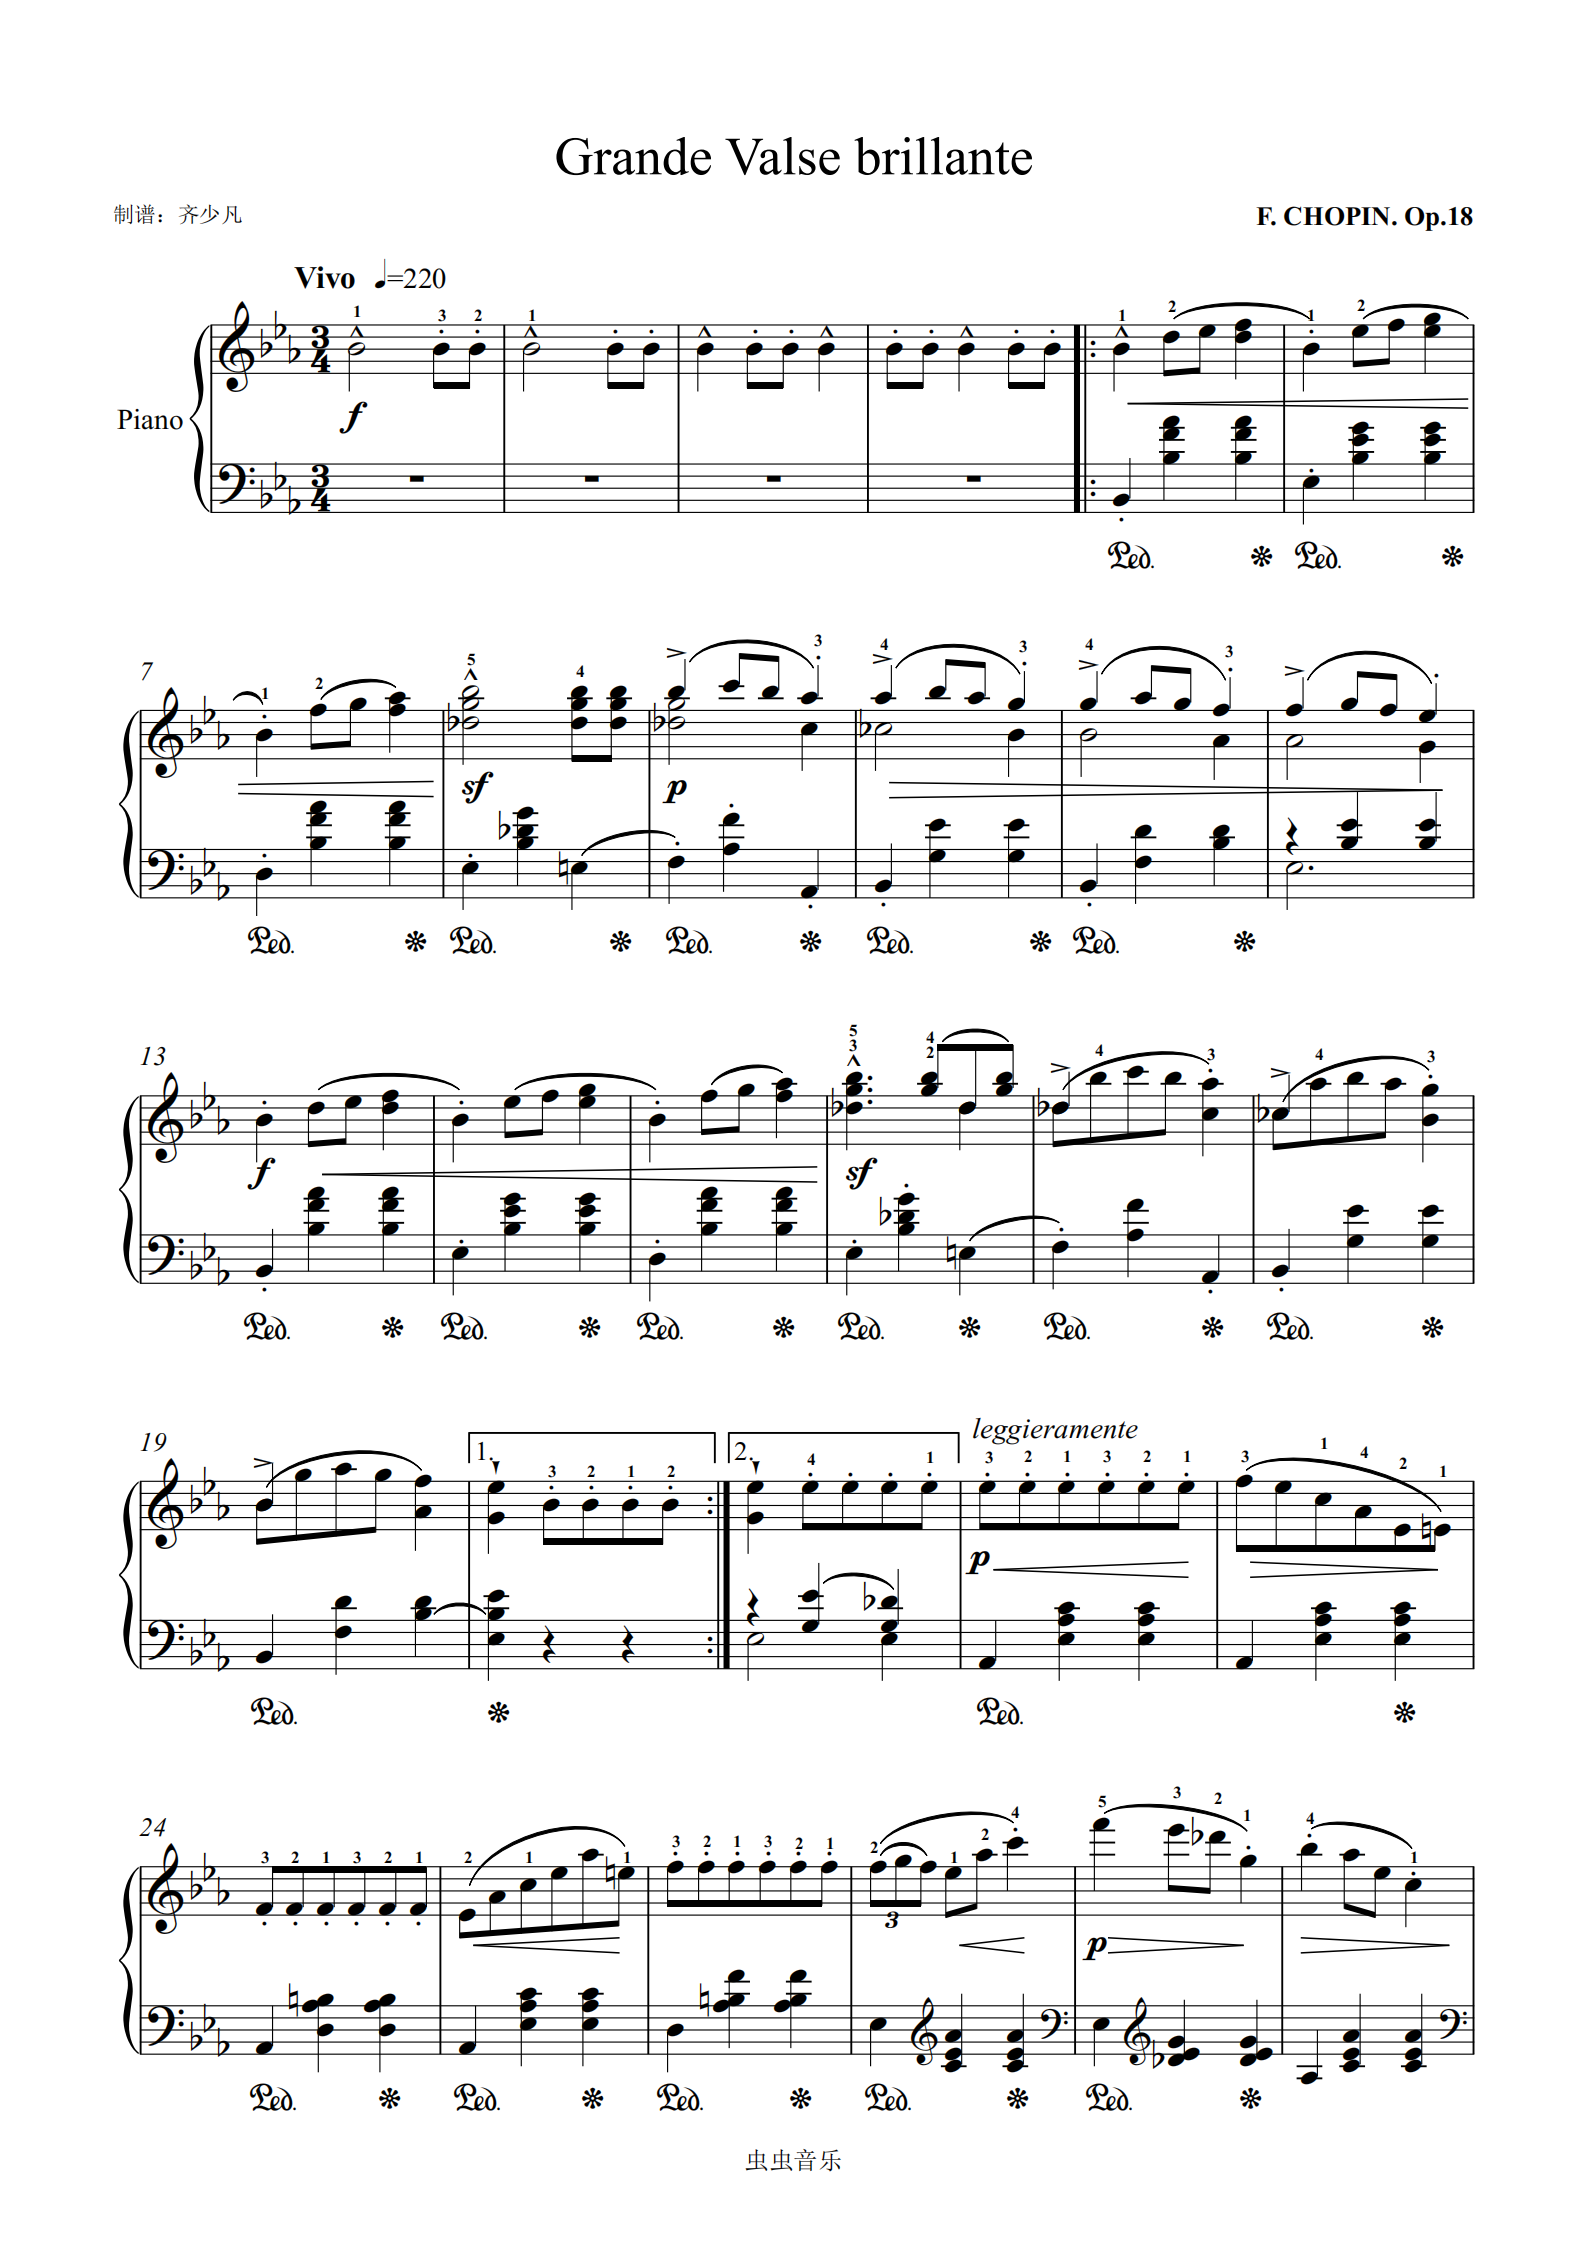 18钢琴谱,肖邦-降e大调华丽大圆舞曲 op.18eb调钢琴谱,肖邦-降e大调华